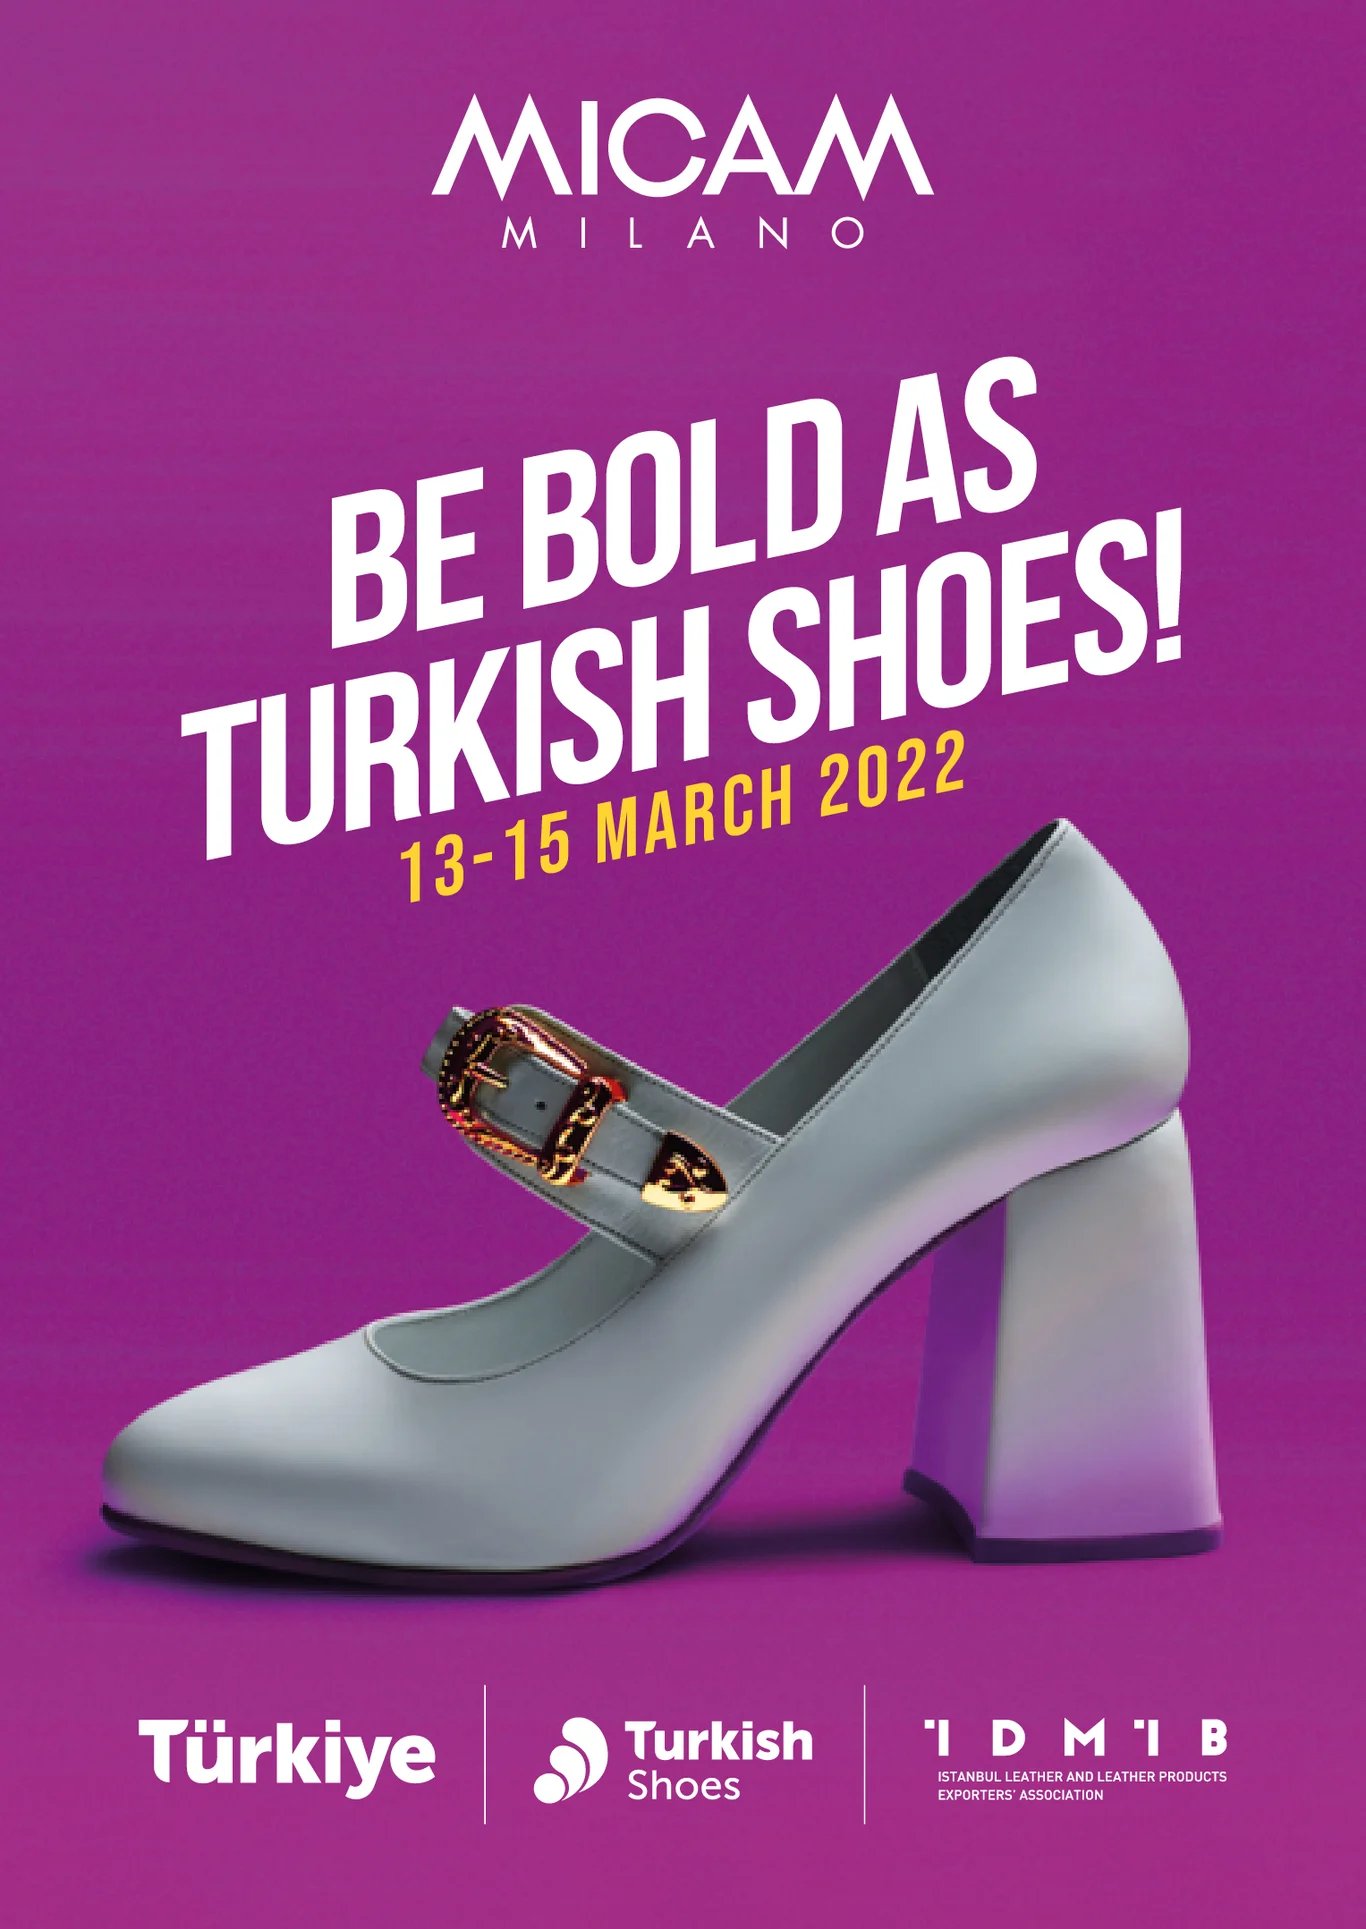 Turkish Shoes @ MICAM 2022-1 @ MICAM Турецкая Обувь @ MICAM Türkische Schuhe @ MICAM